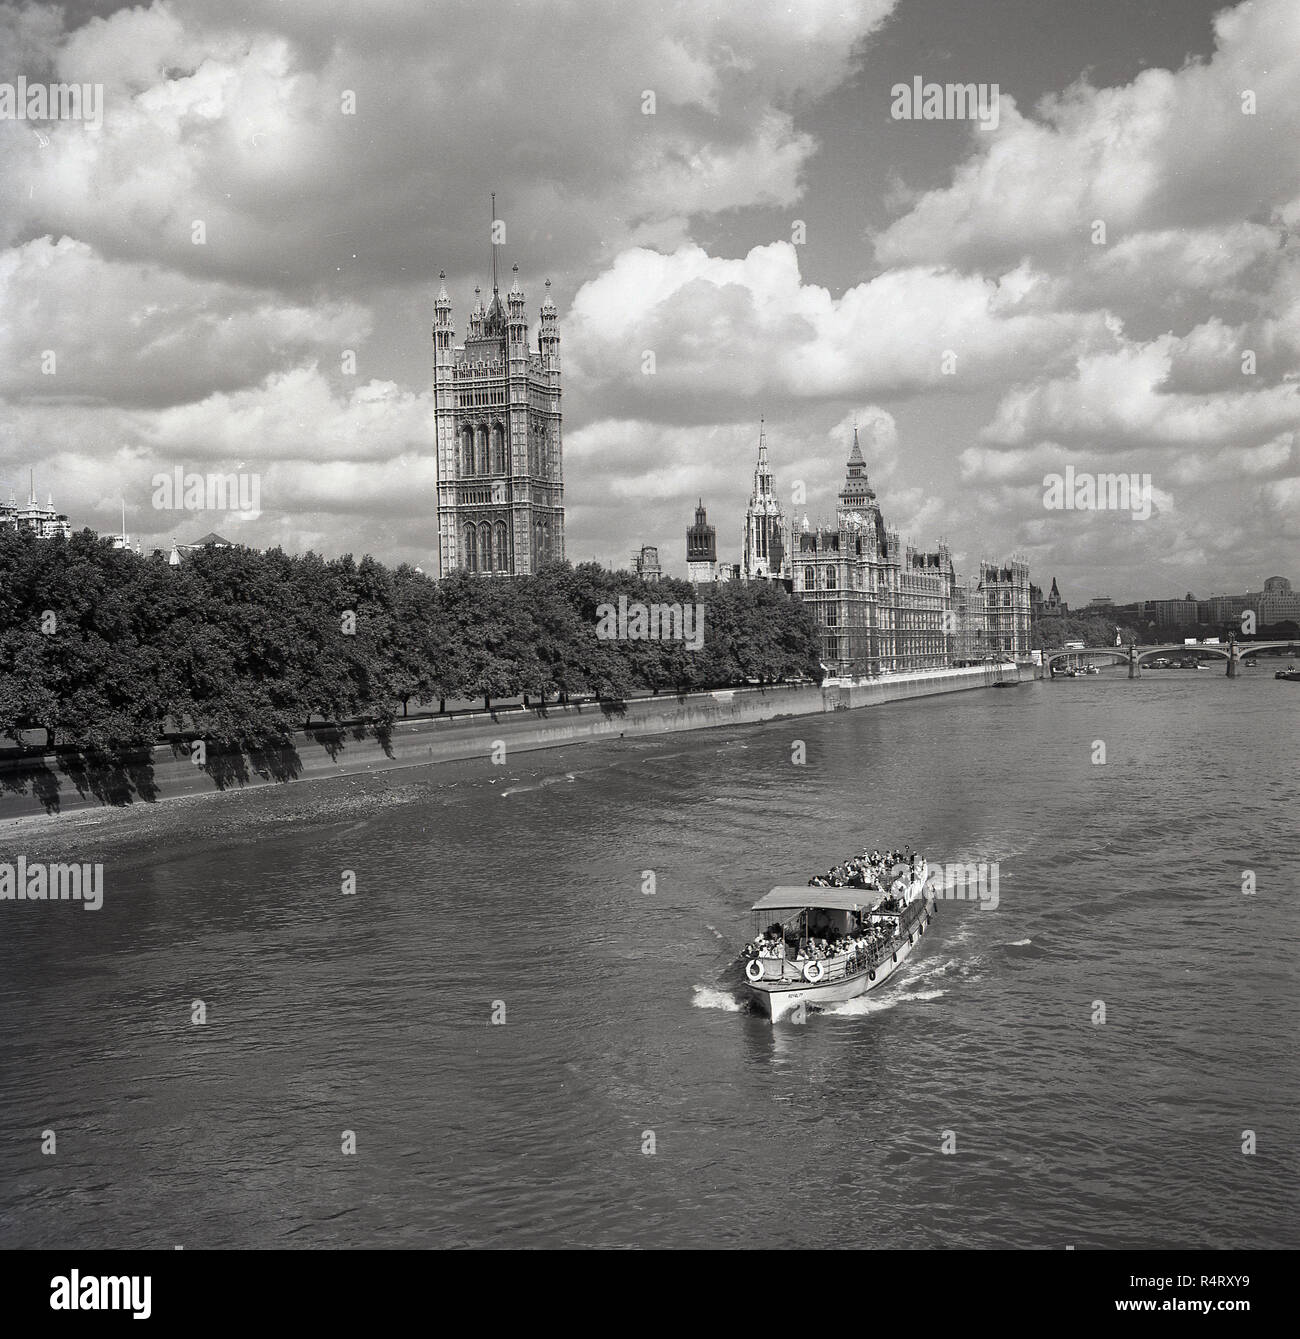 1960, historische, Sommerzeit und das Boot hinunter in den Fluss Themse gerade hinter den Häusern des Parlaments, das Gebäude der Regierung von Großbritannien, London, England, UK. Stockfoto